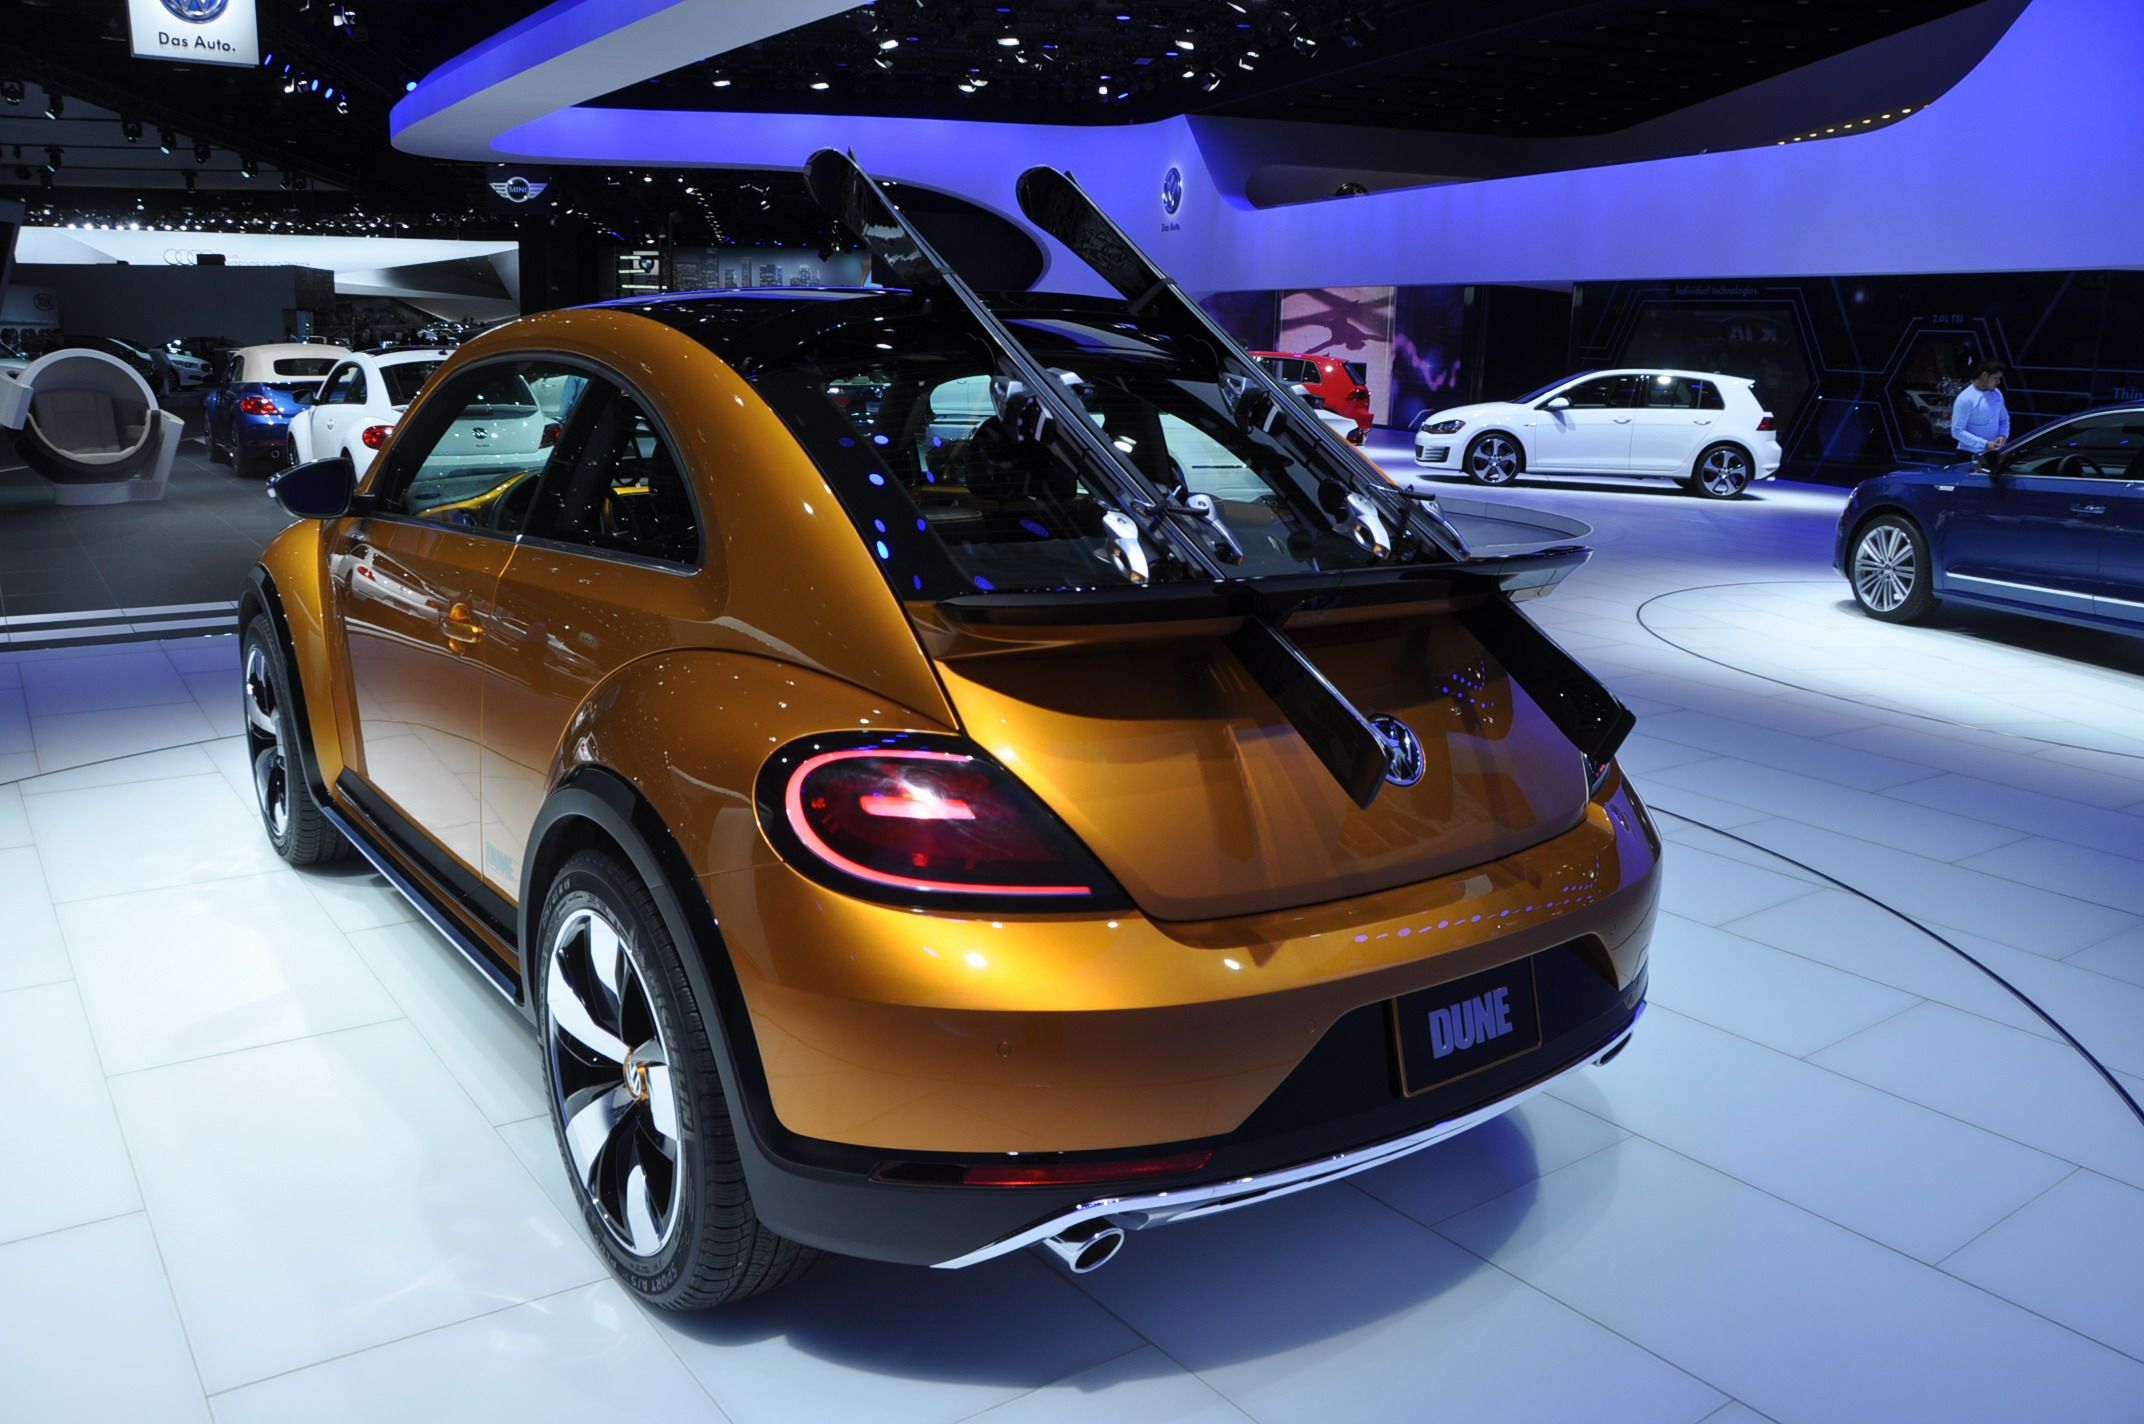 2014 Volkswagen New Beetle Dune Concept